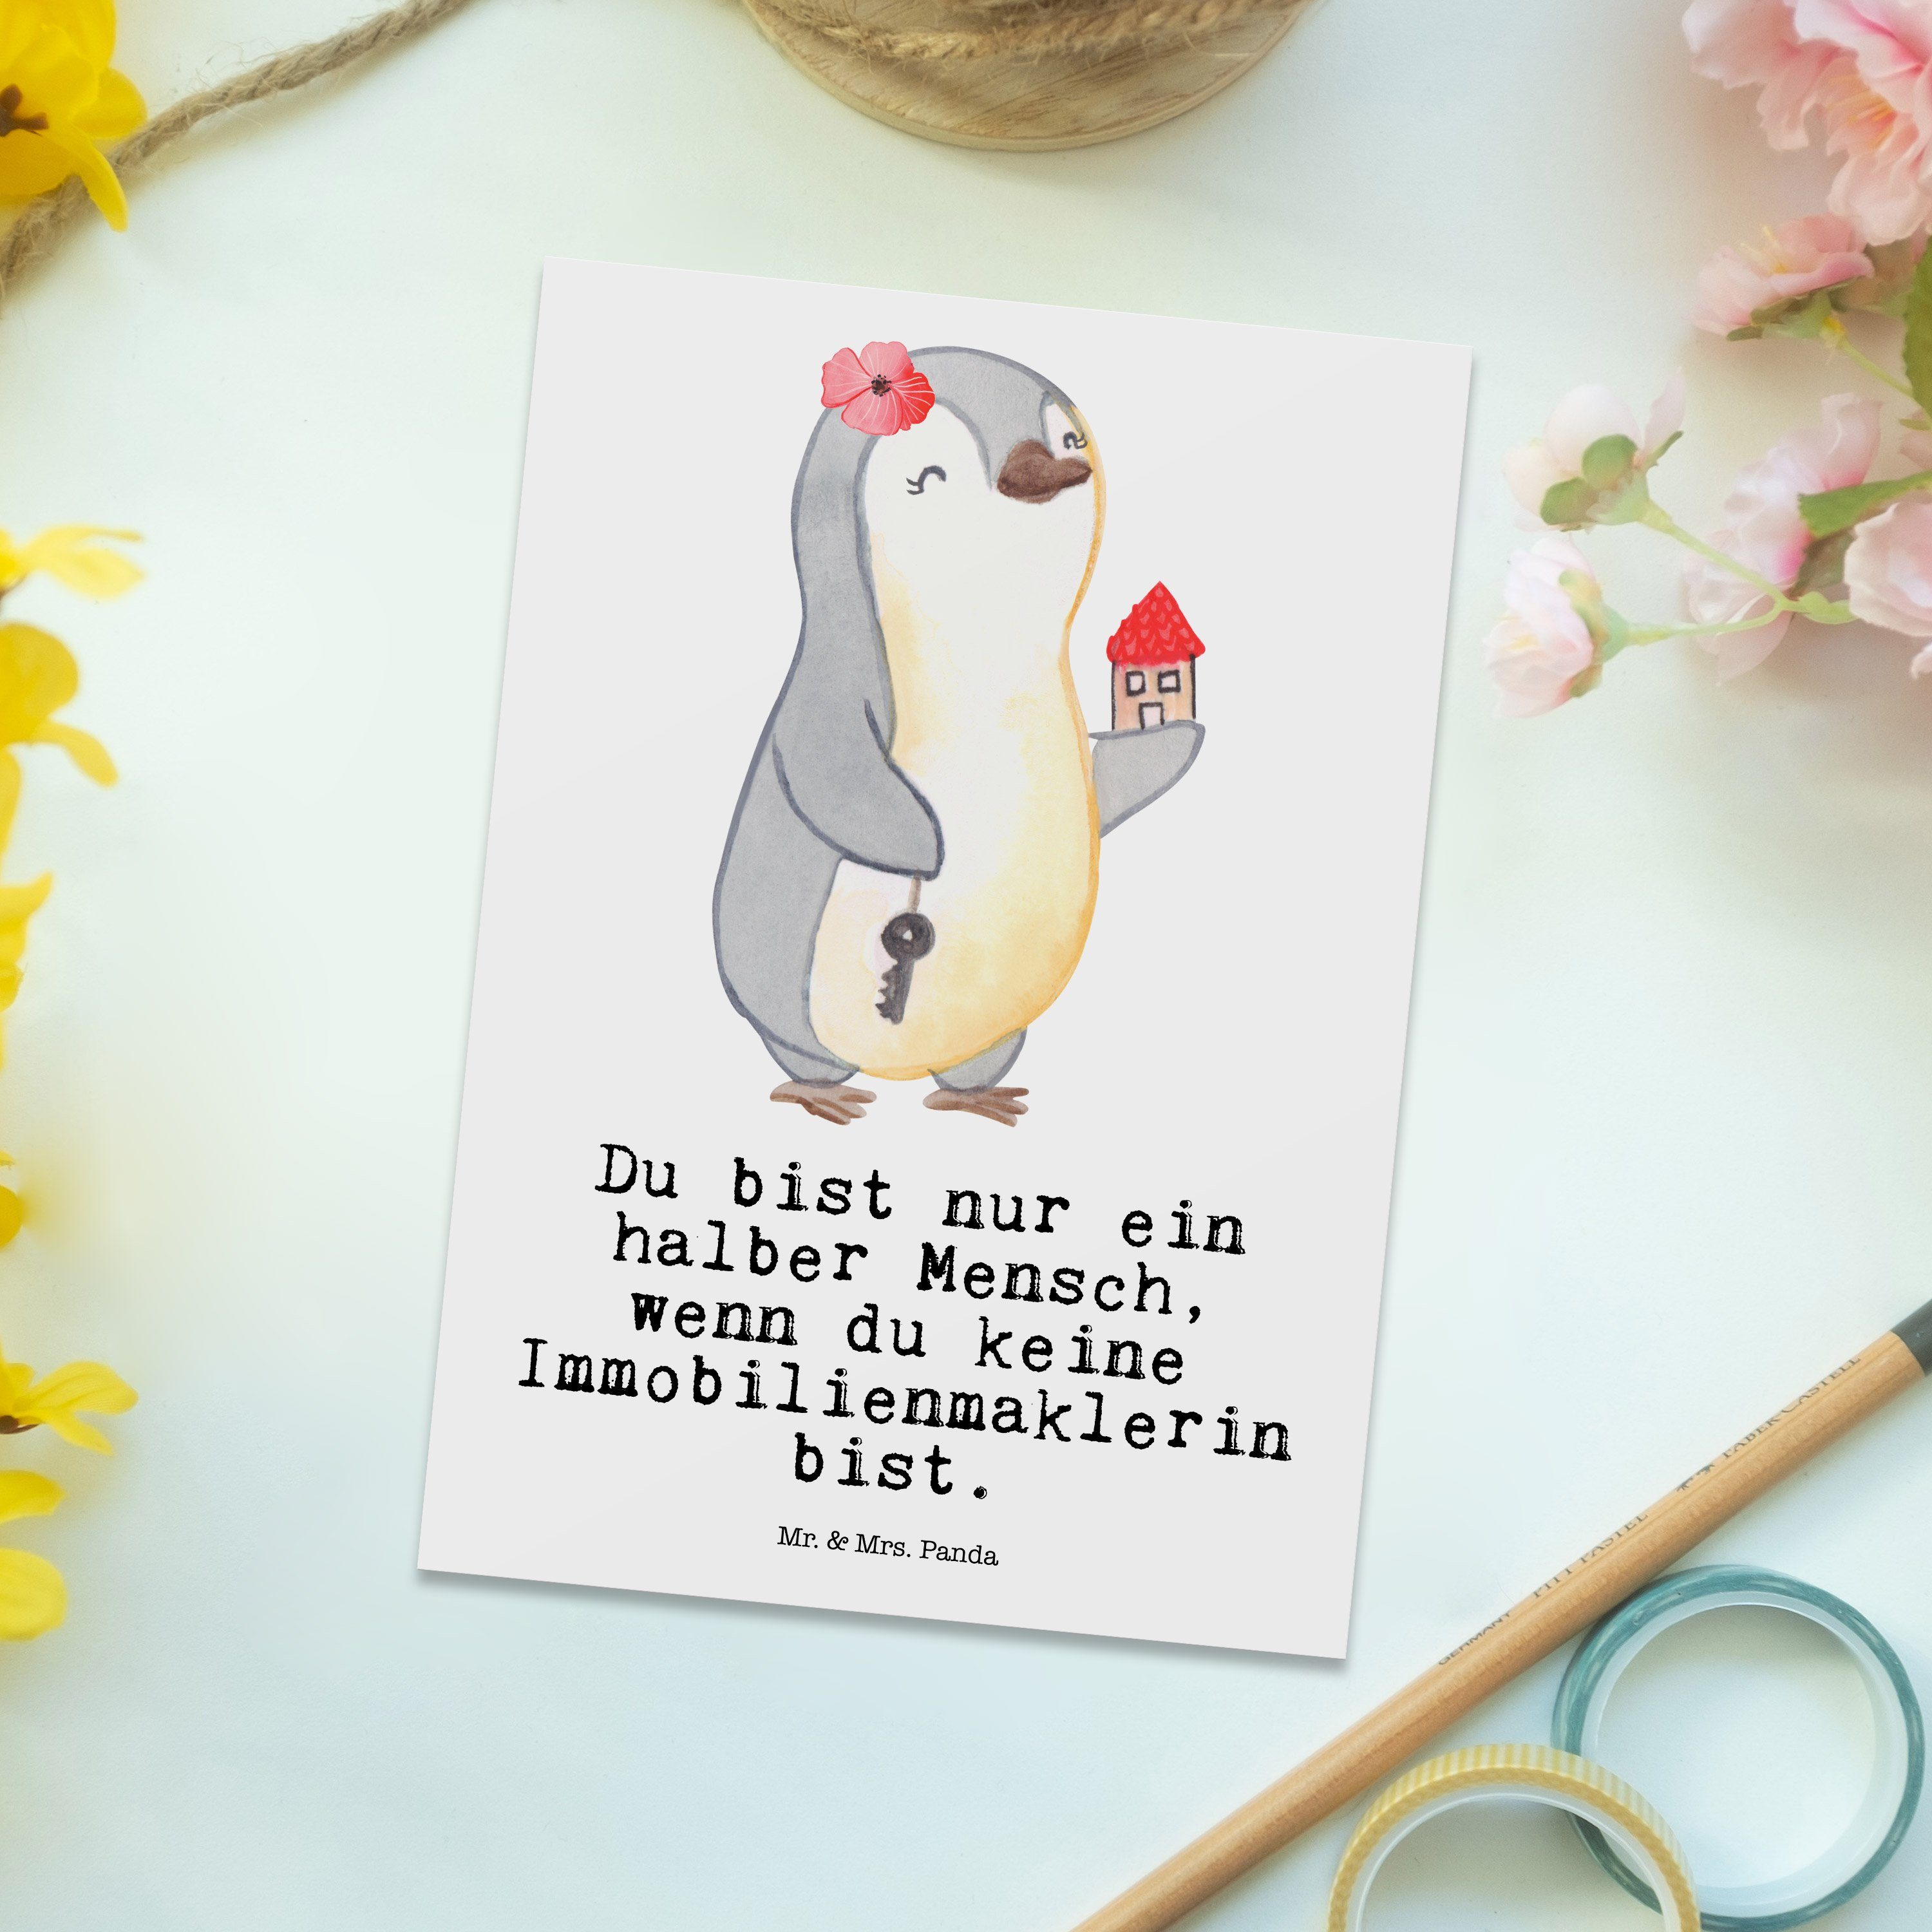 & - Mr. Postkarte Geschenk, Weiß Panda Herz Rente, mit Einla Abschied, Mrs. Immobilienmaklerin -